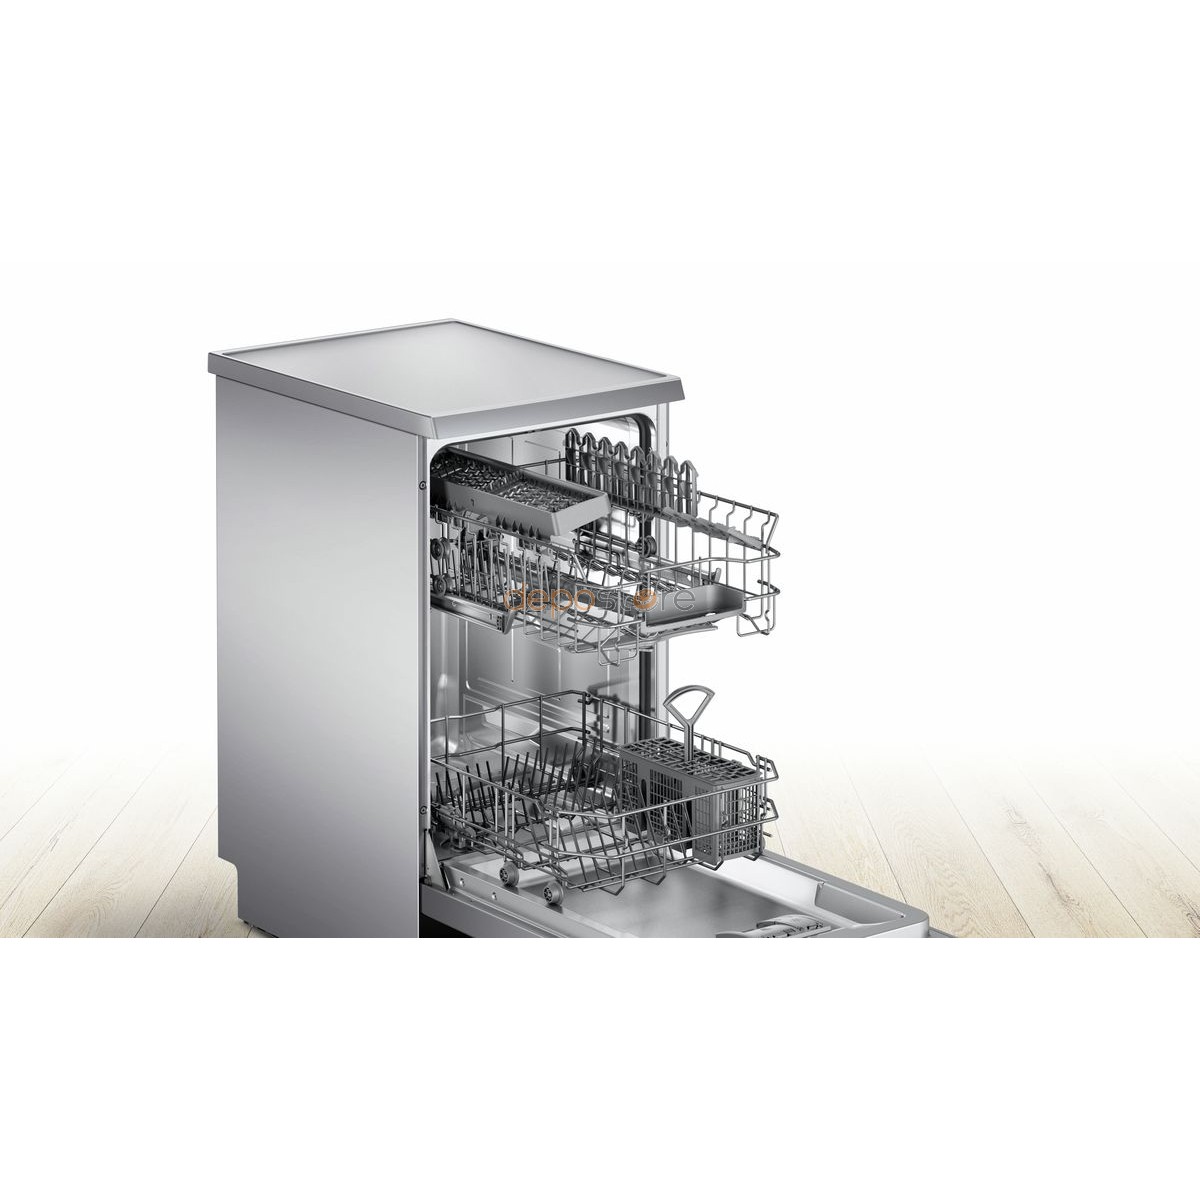 Хорошая посудомойка встроенная 45. Посудомоечная машина Bosch sps25cw01r. Посудомоечная машина Bosch sps25fw12r. Посудомойка Bosch SPS 25dw03r. Посудомоечная машина Bosch SPS 25ci00 e.